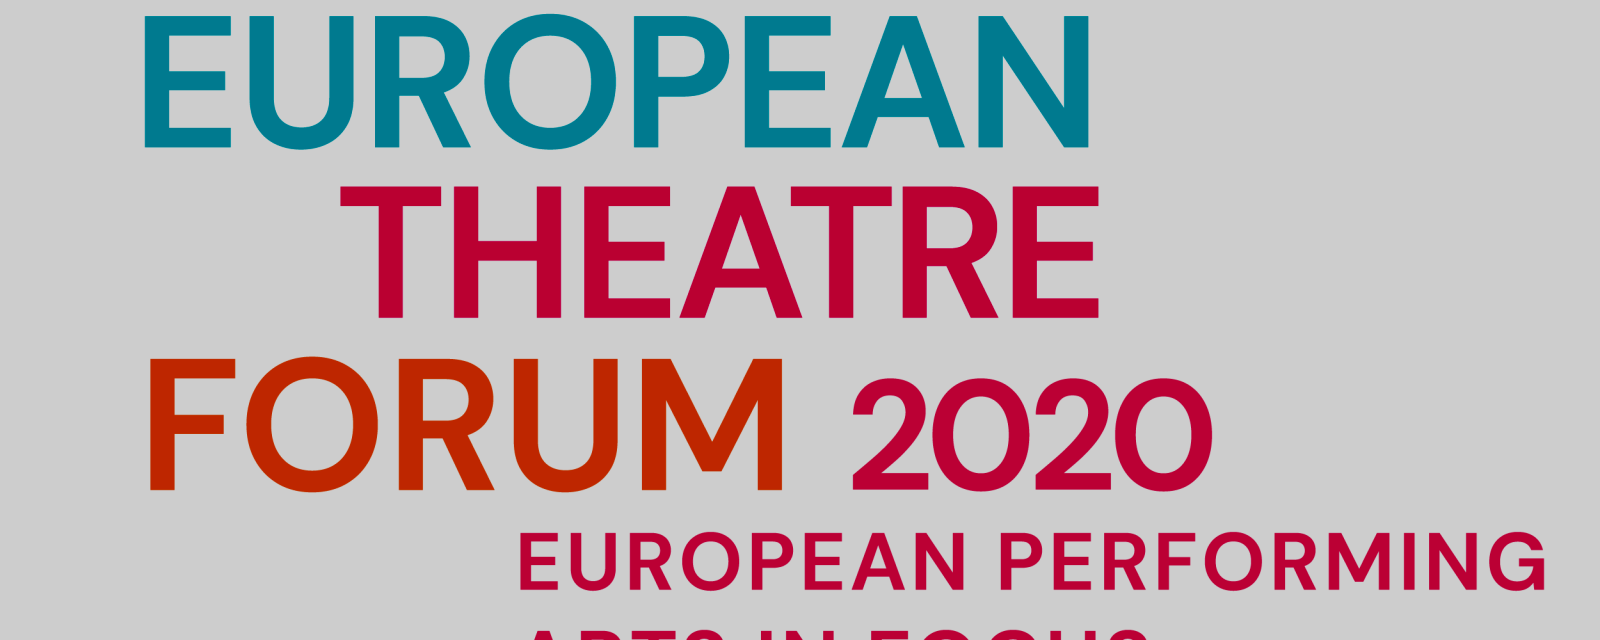 european-theatre-forum_2020